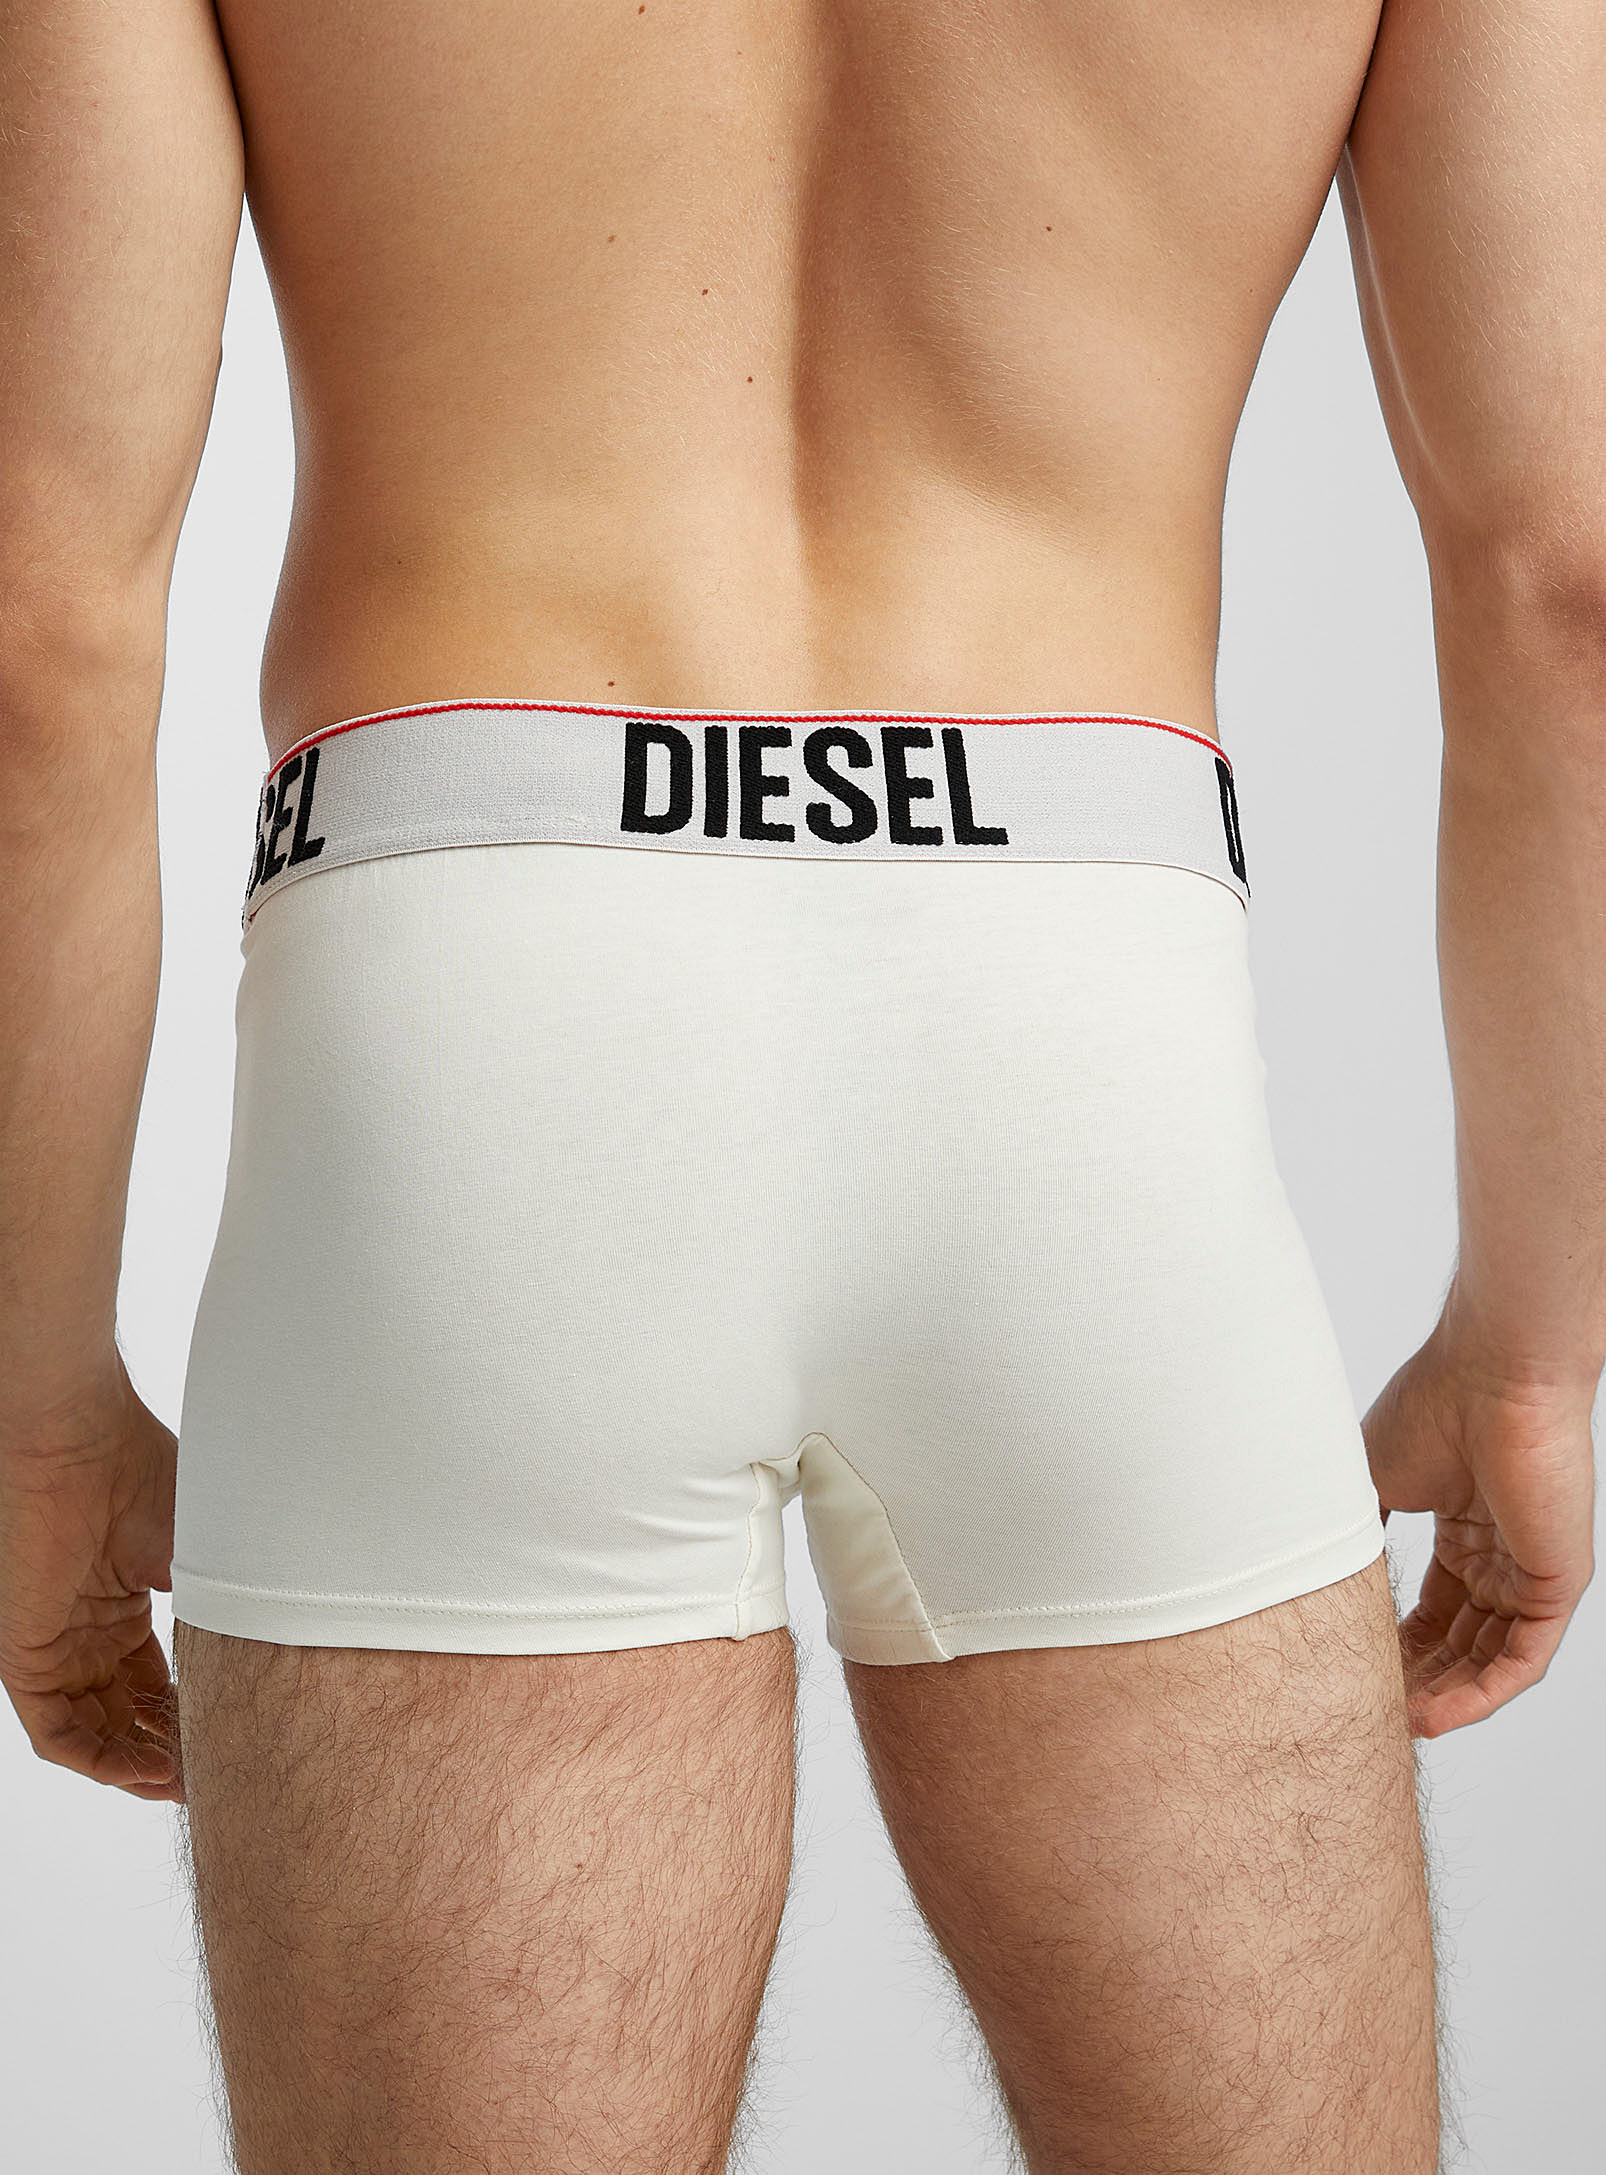 Diesel - Le boxeur court ivoire large logo